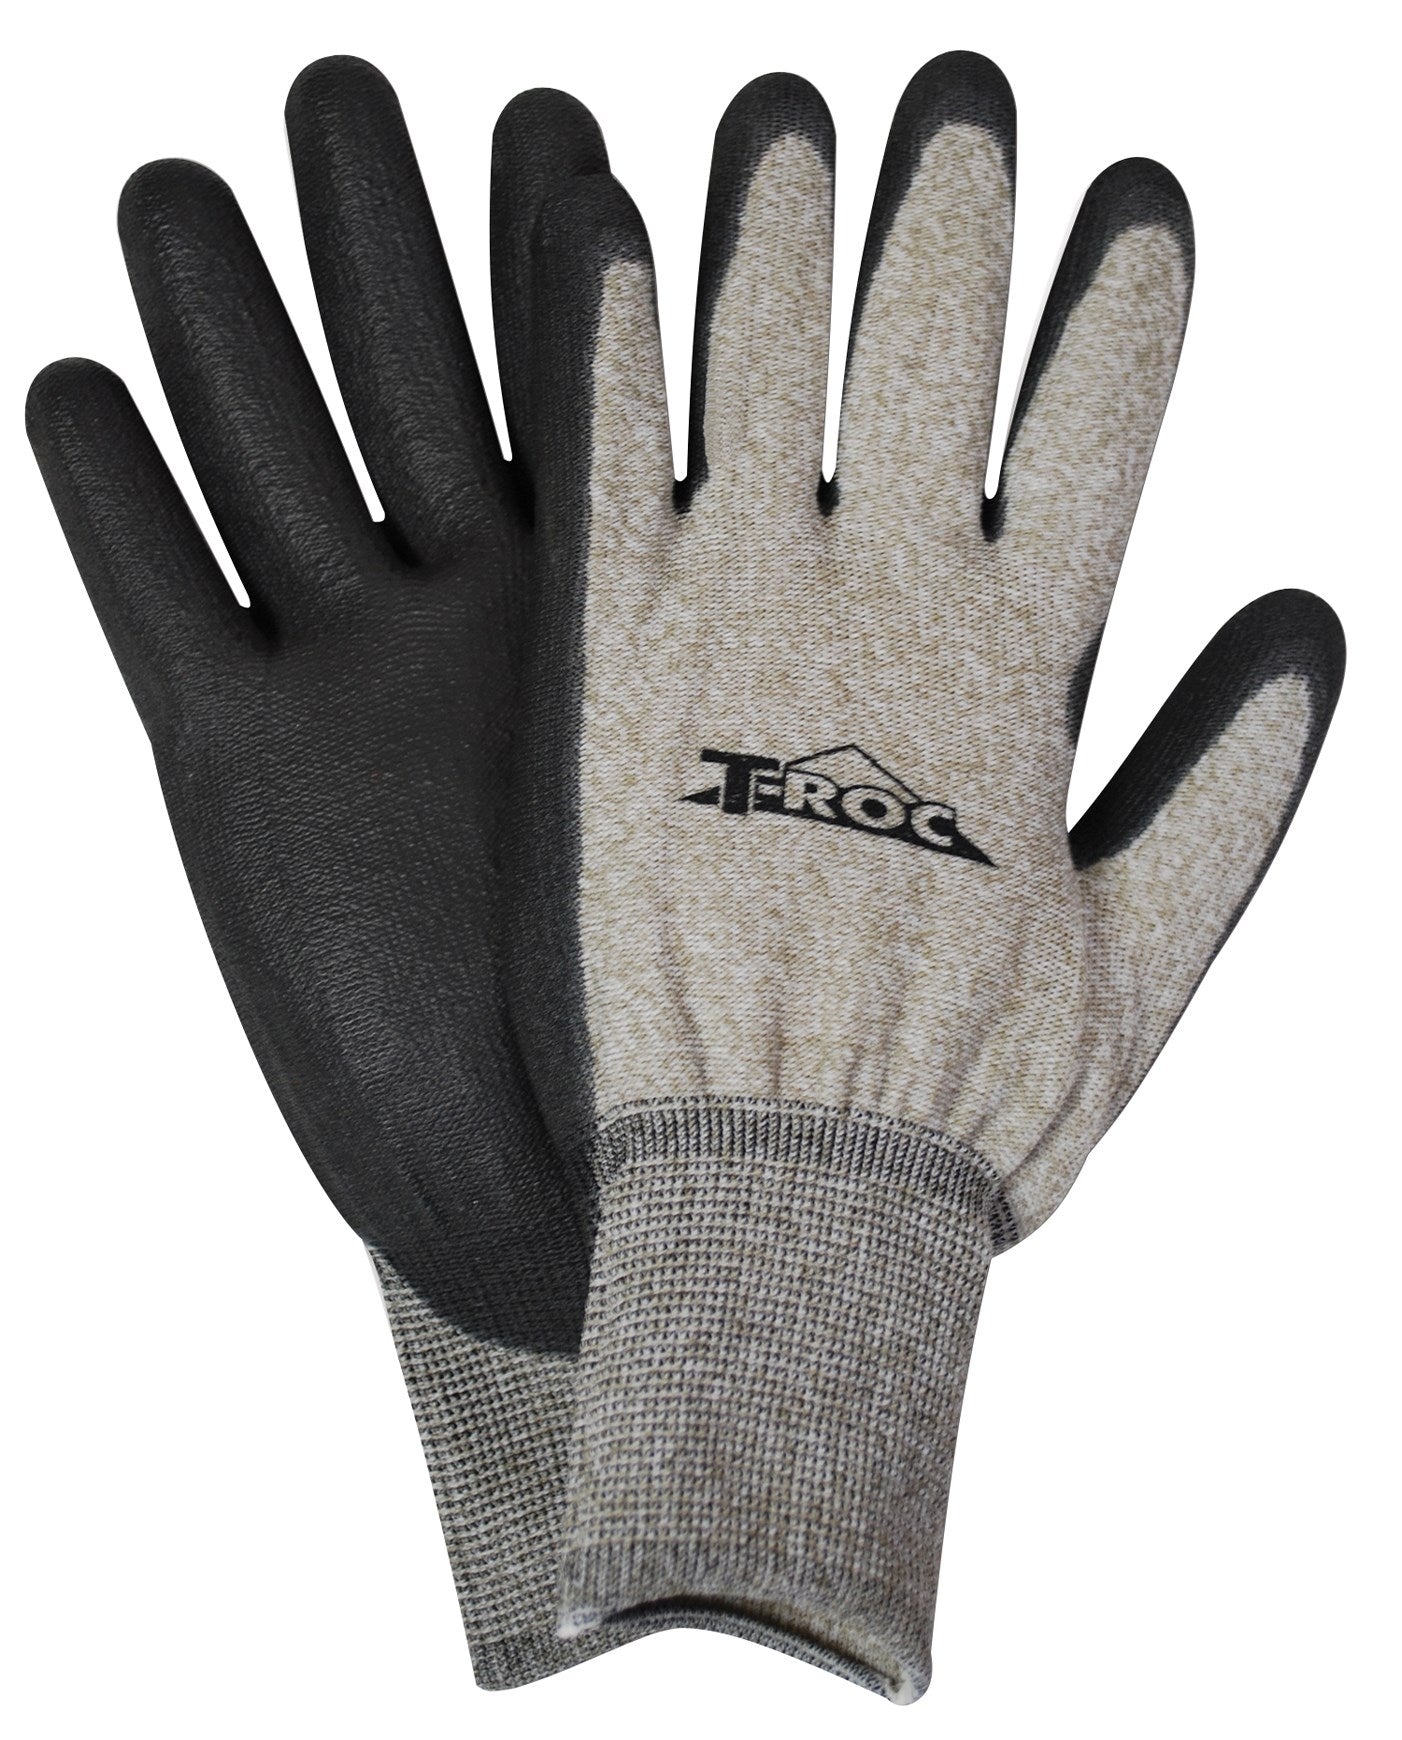 Gant Magid, Magid Glove ROC5000TM Gants à écran tactile Roc moyen